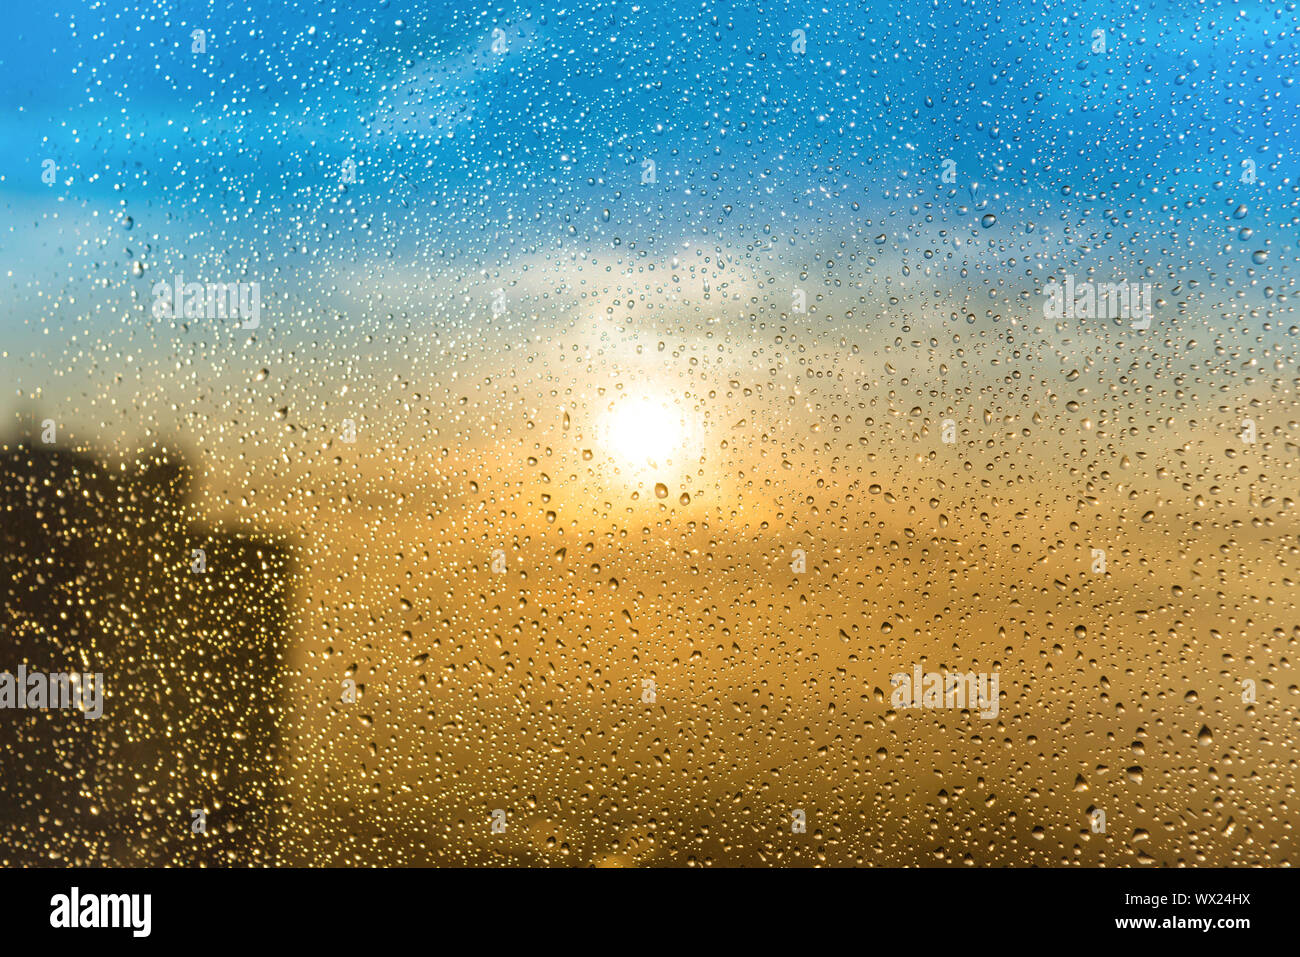 Magnifique coucher de soleil avec de l'eau de pluie Banque D'Images